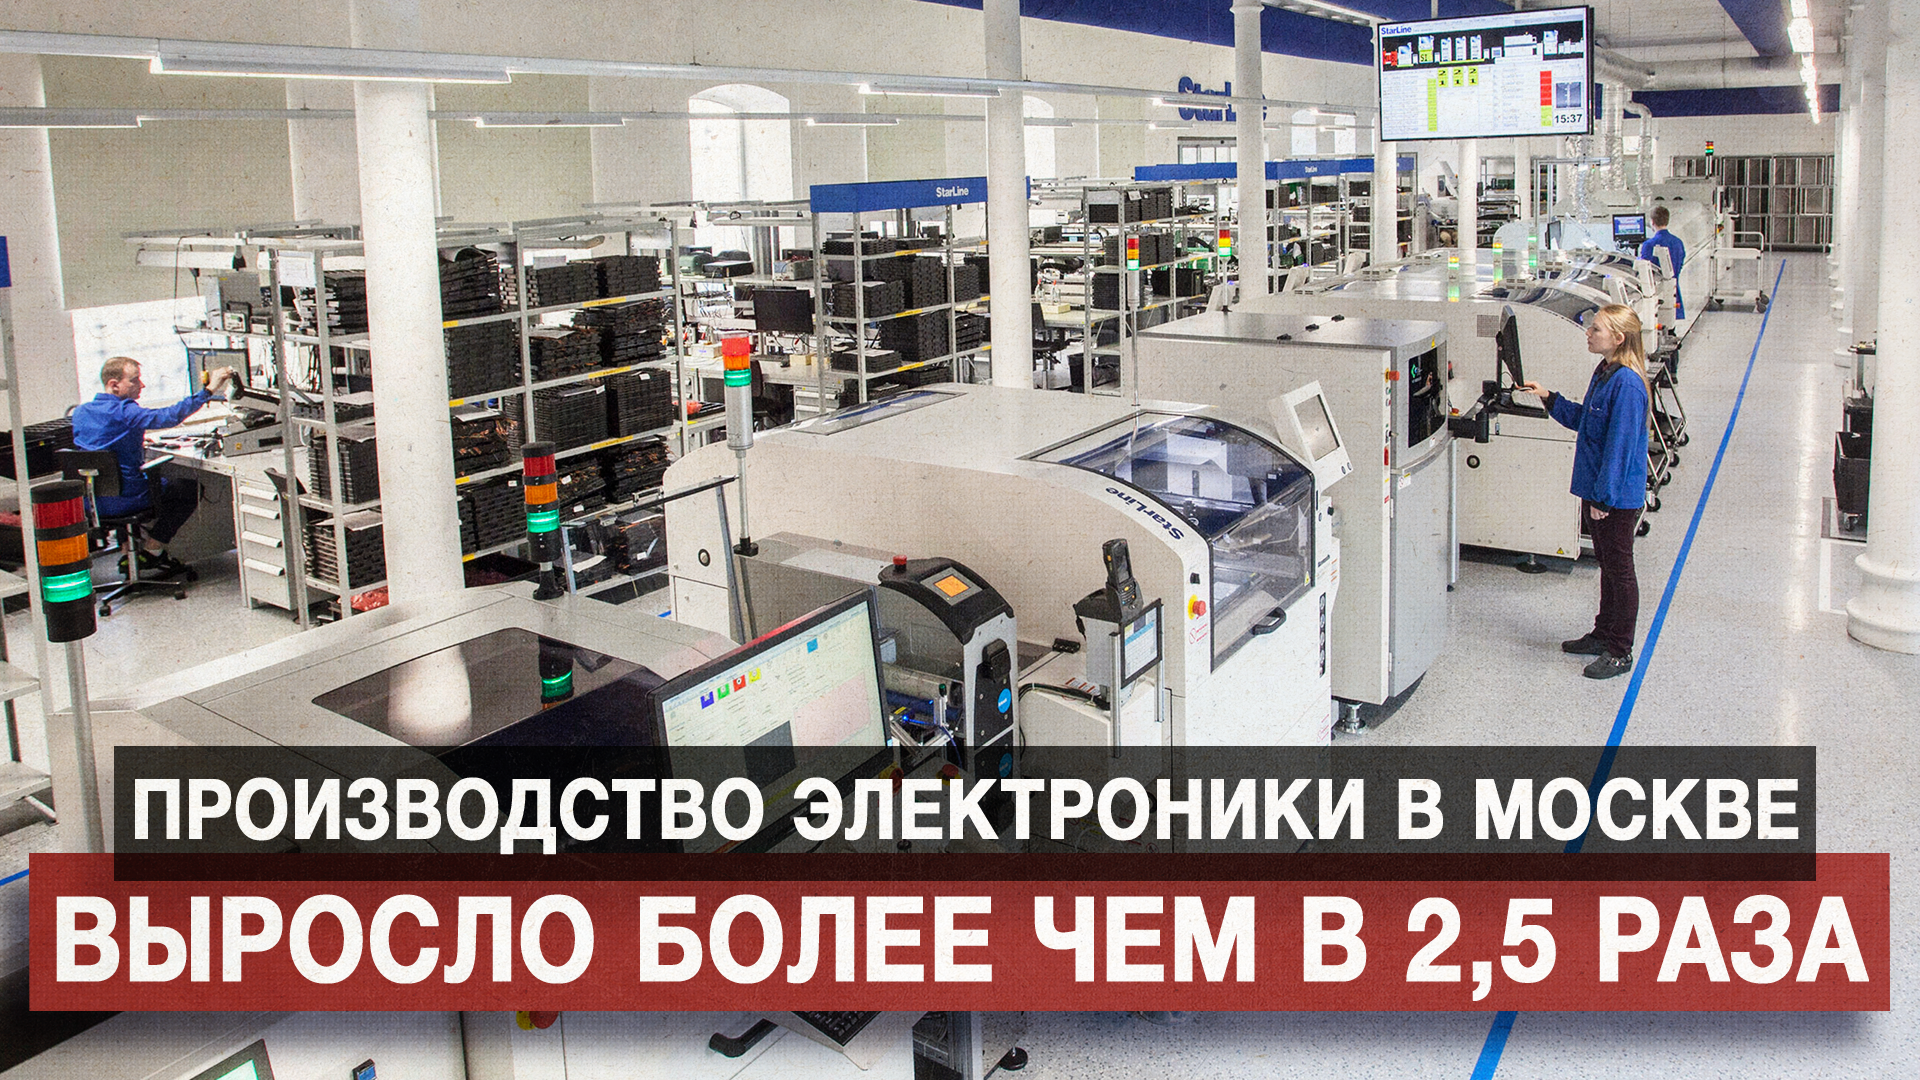 Производство электроники в Москве выросло более чем в 2,5 раза